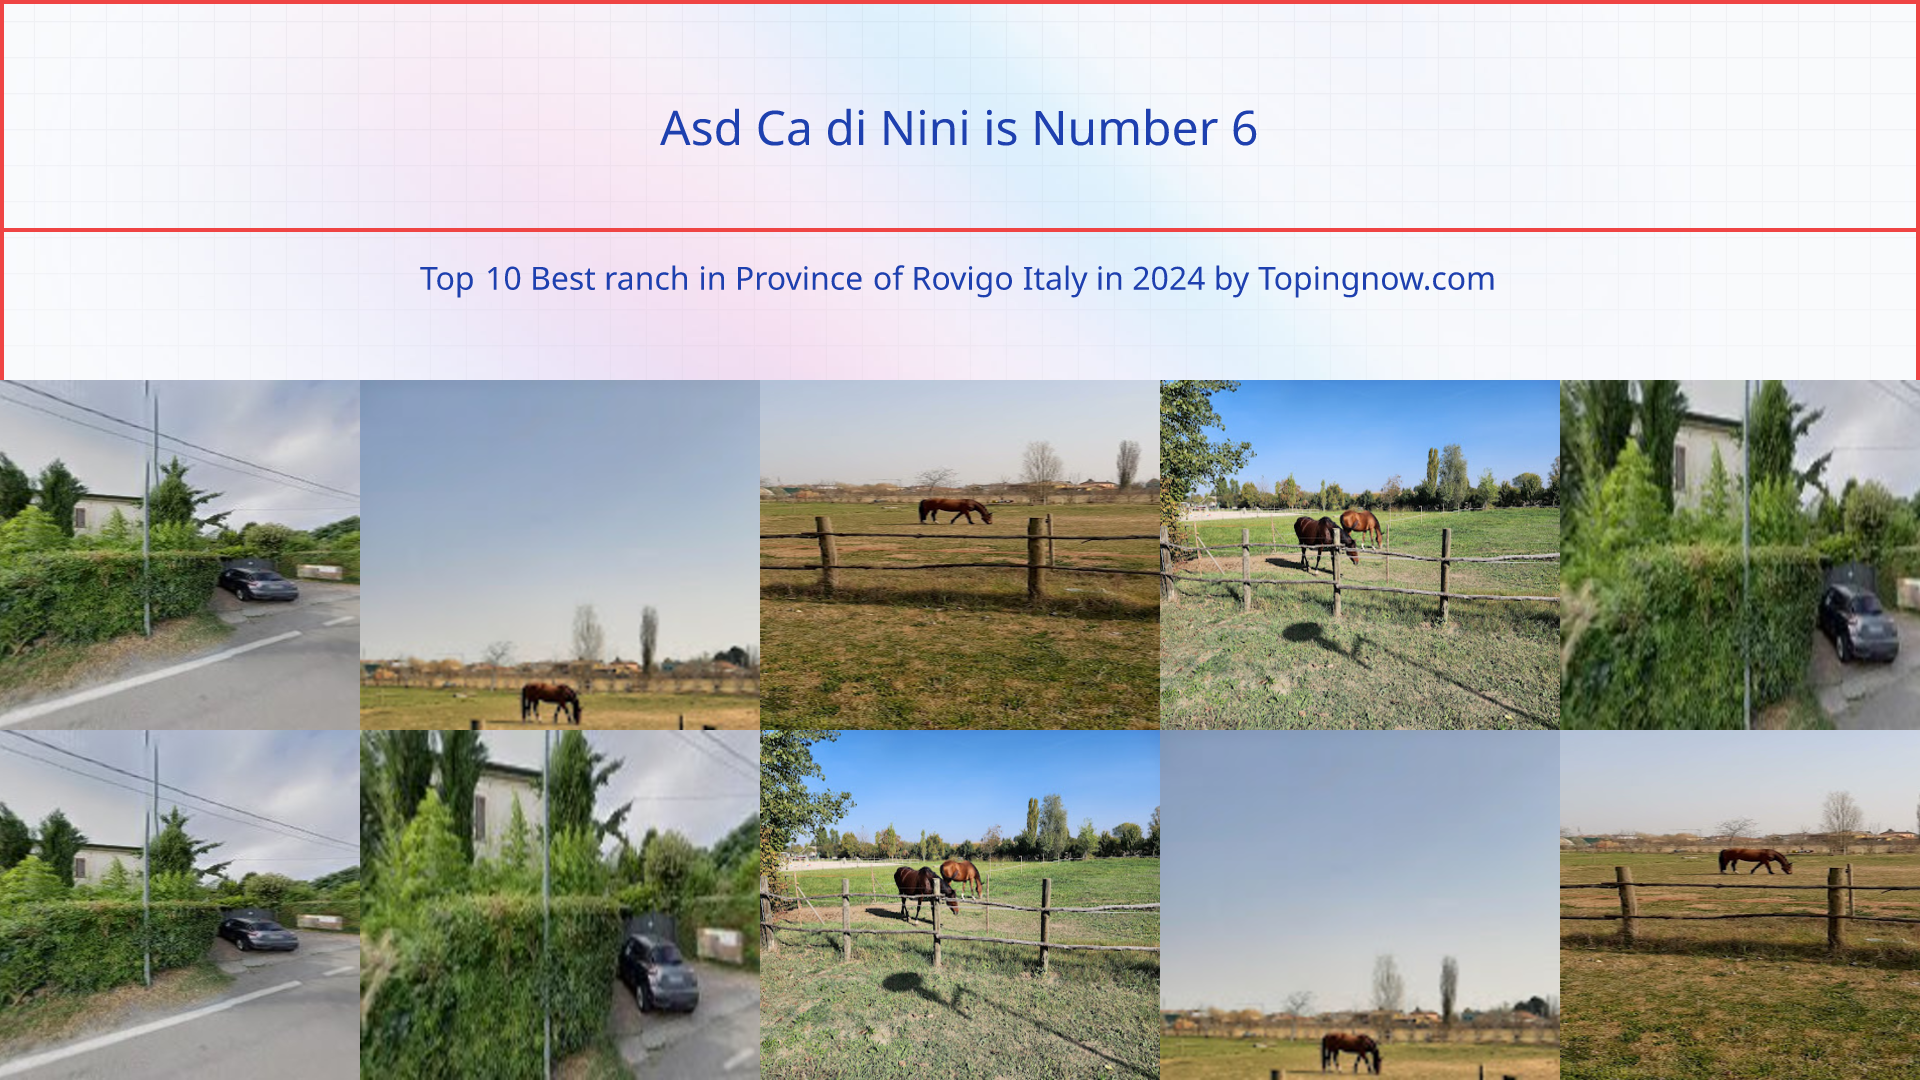 Asd Ca di Nini: Top 10 Best ranch in Province of Rovigo Italy in 2024